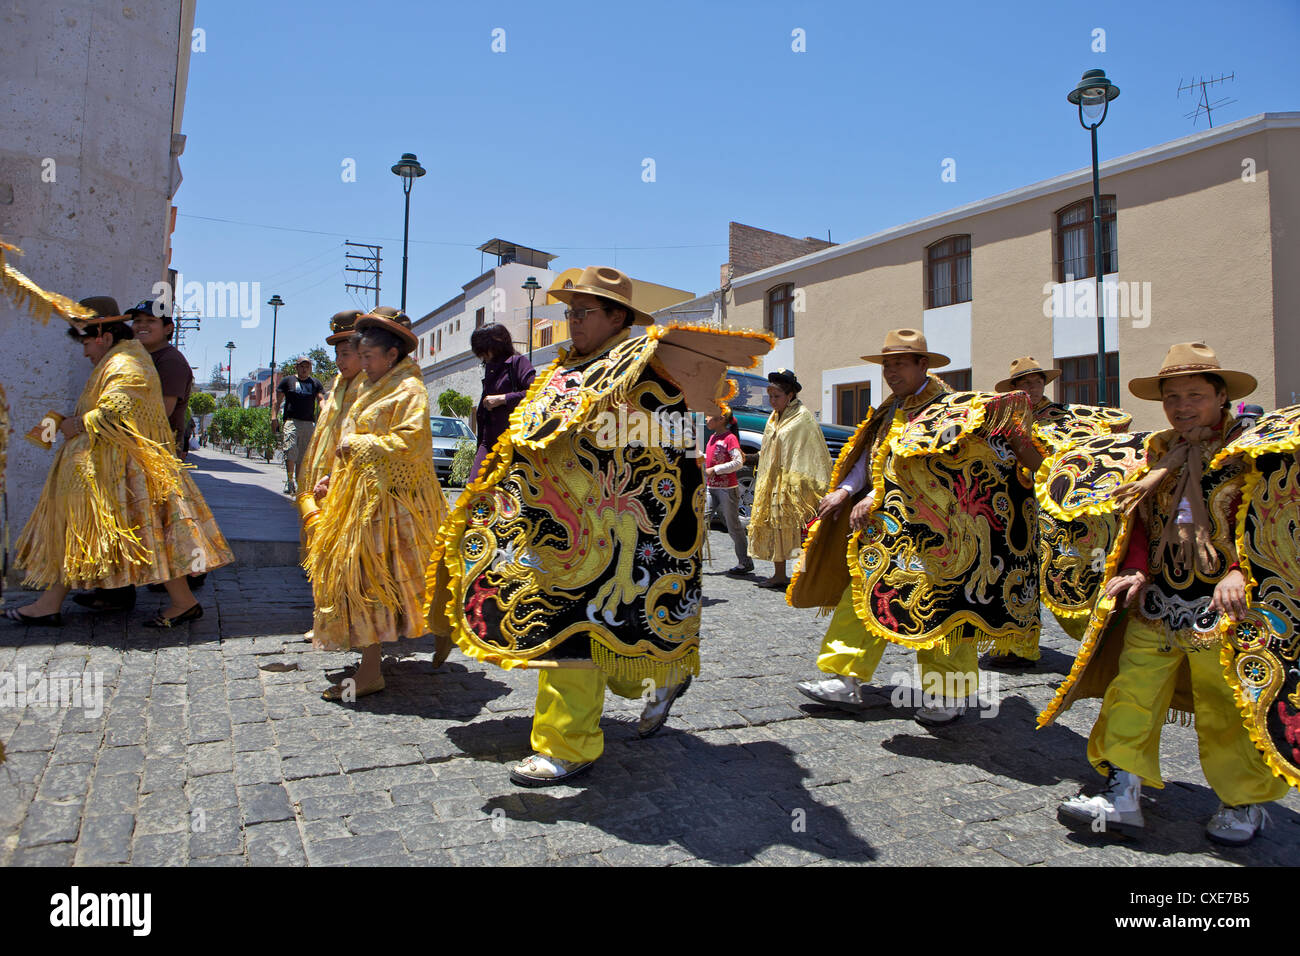 Cortège de mariage avec des vêtements traditionnels péruviens, Arequipa, Pérou, Amérique du Sud Banque D'Images